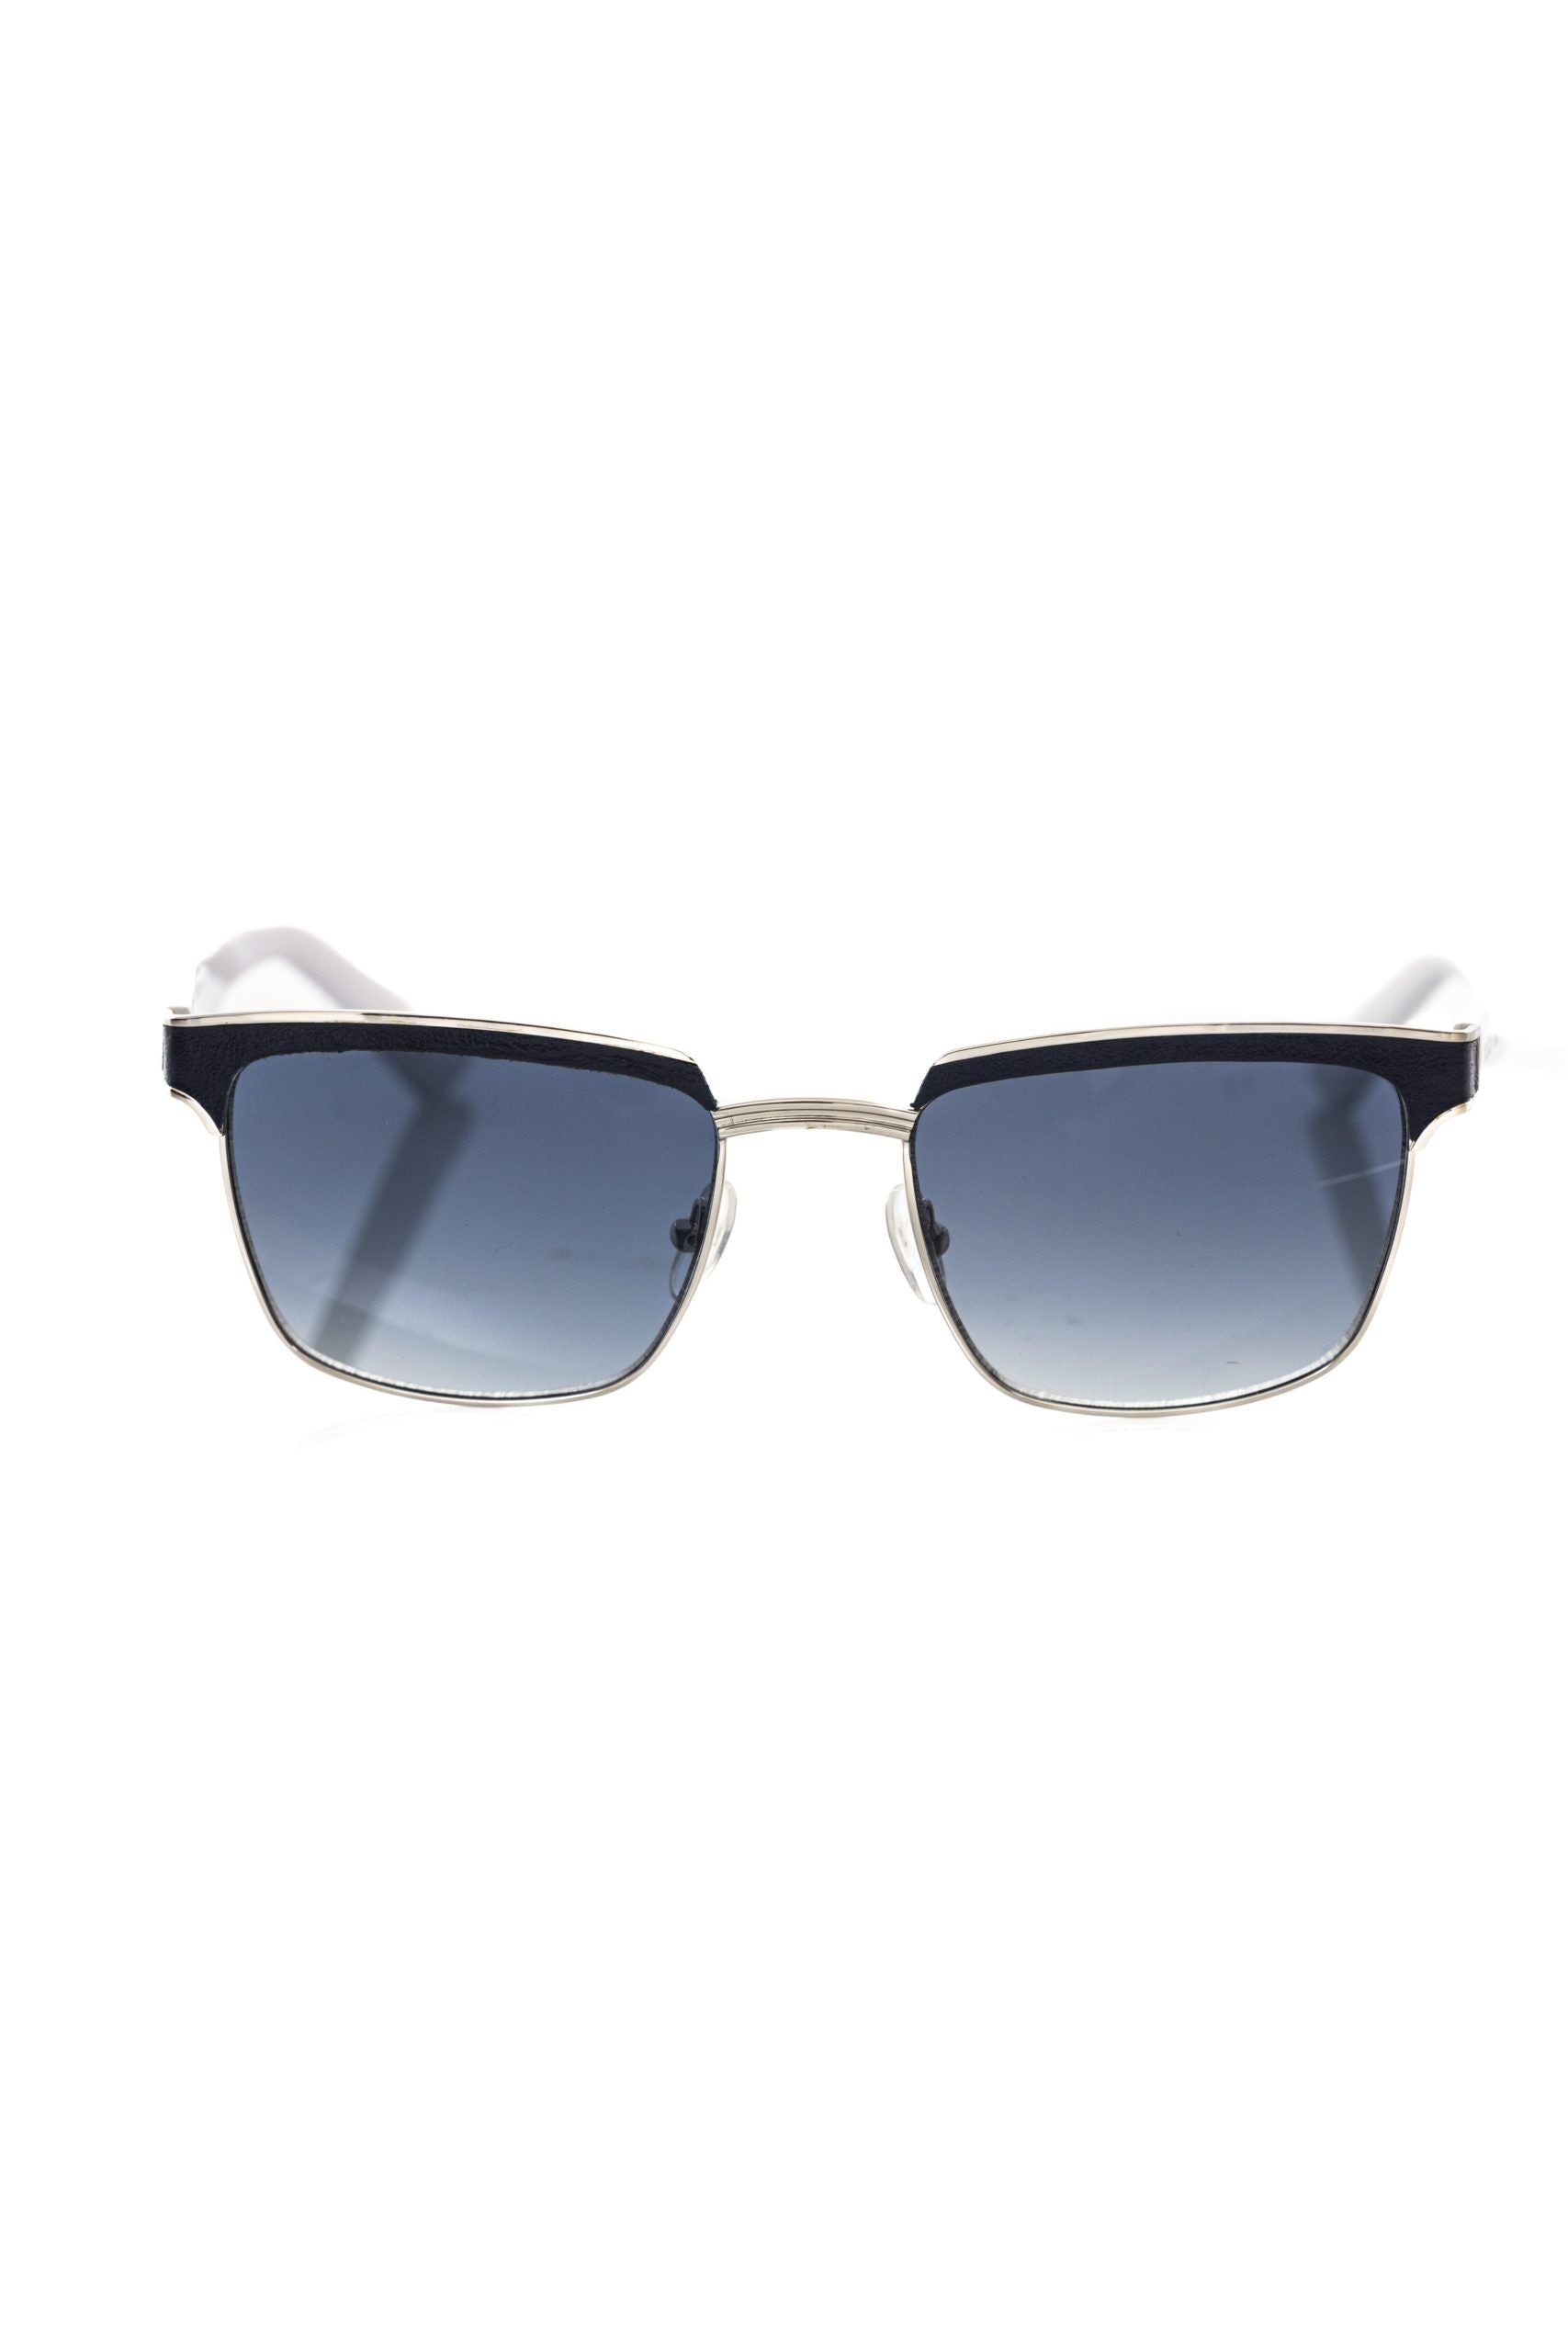 Elegante Clubmaster-Sonnenbrille aus schwarzem Leder von Frankie Morello